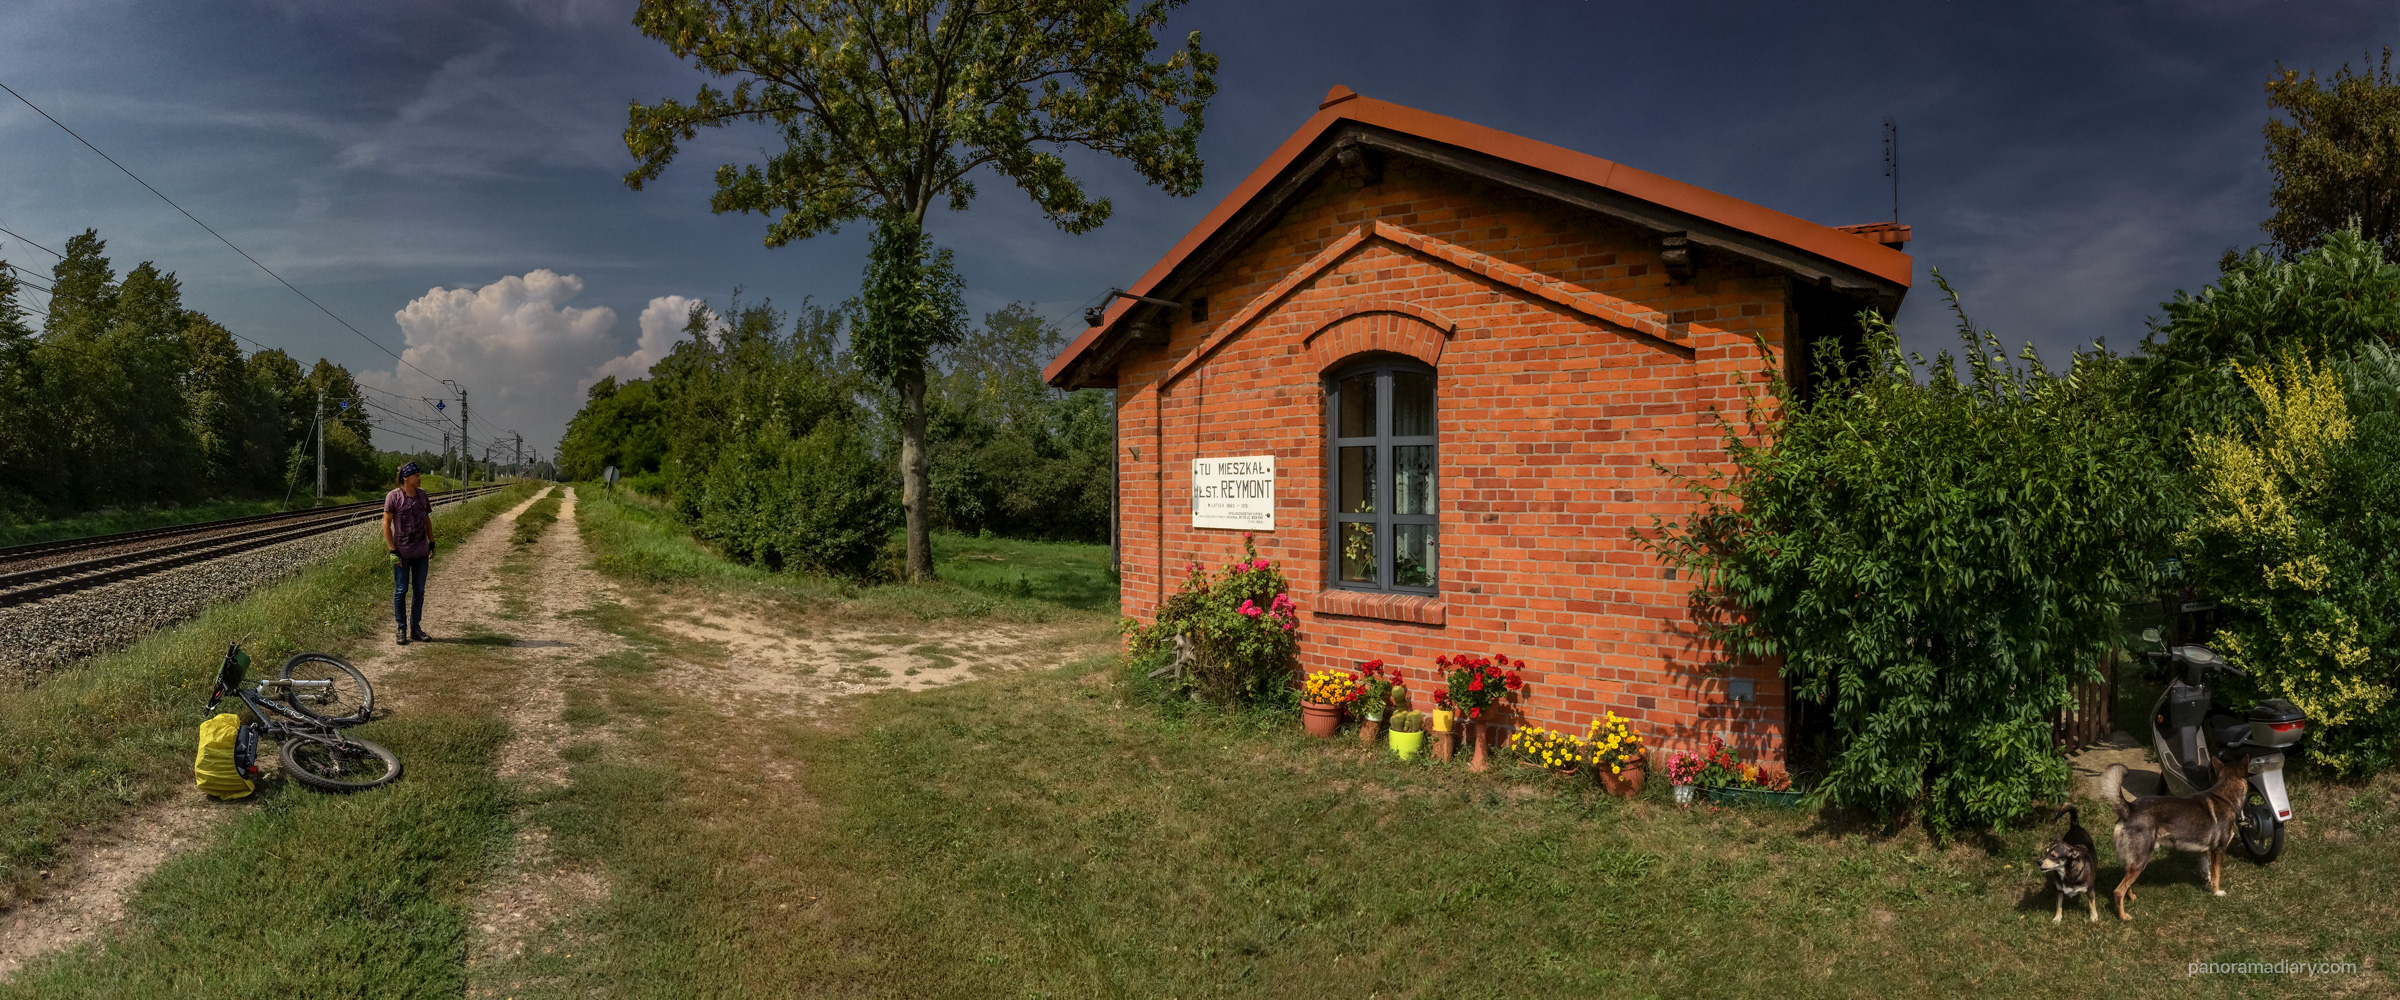 Władysław Reymont Noblist house | PANORAMA DIARY